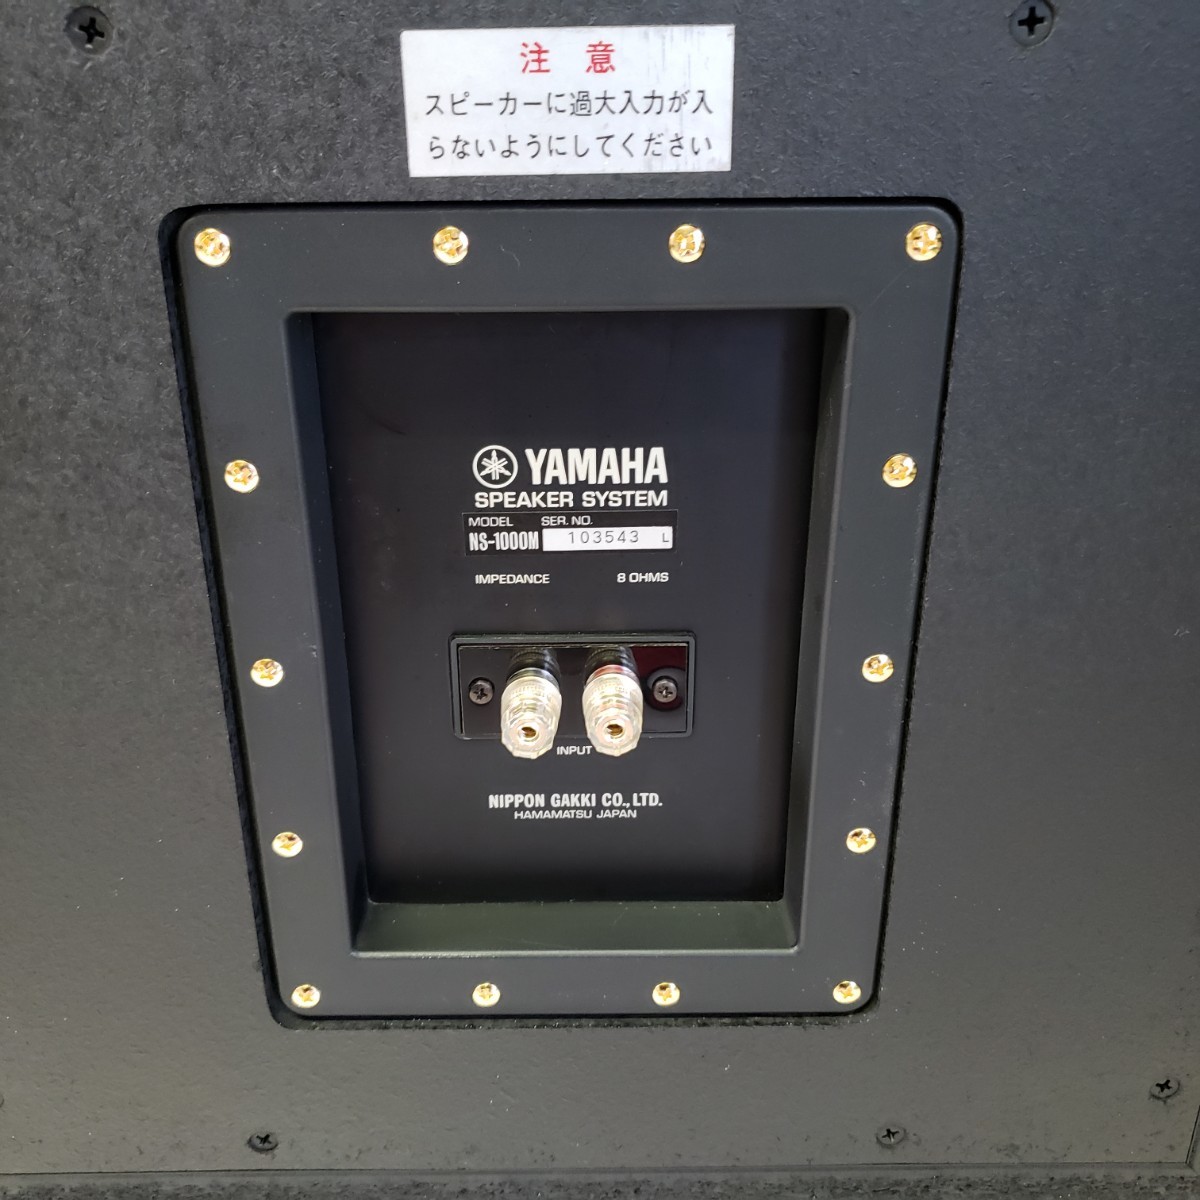  ultimate beautiful goods specular burnishing finishing YAMAHA NS-1000M speaker gold emblem 